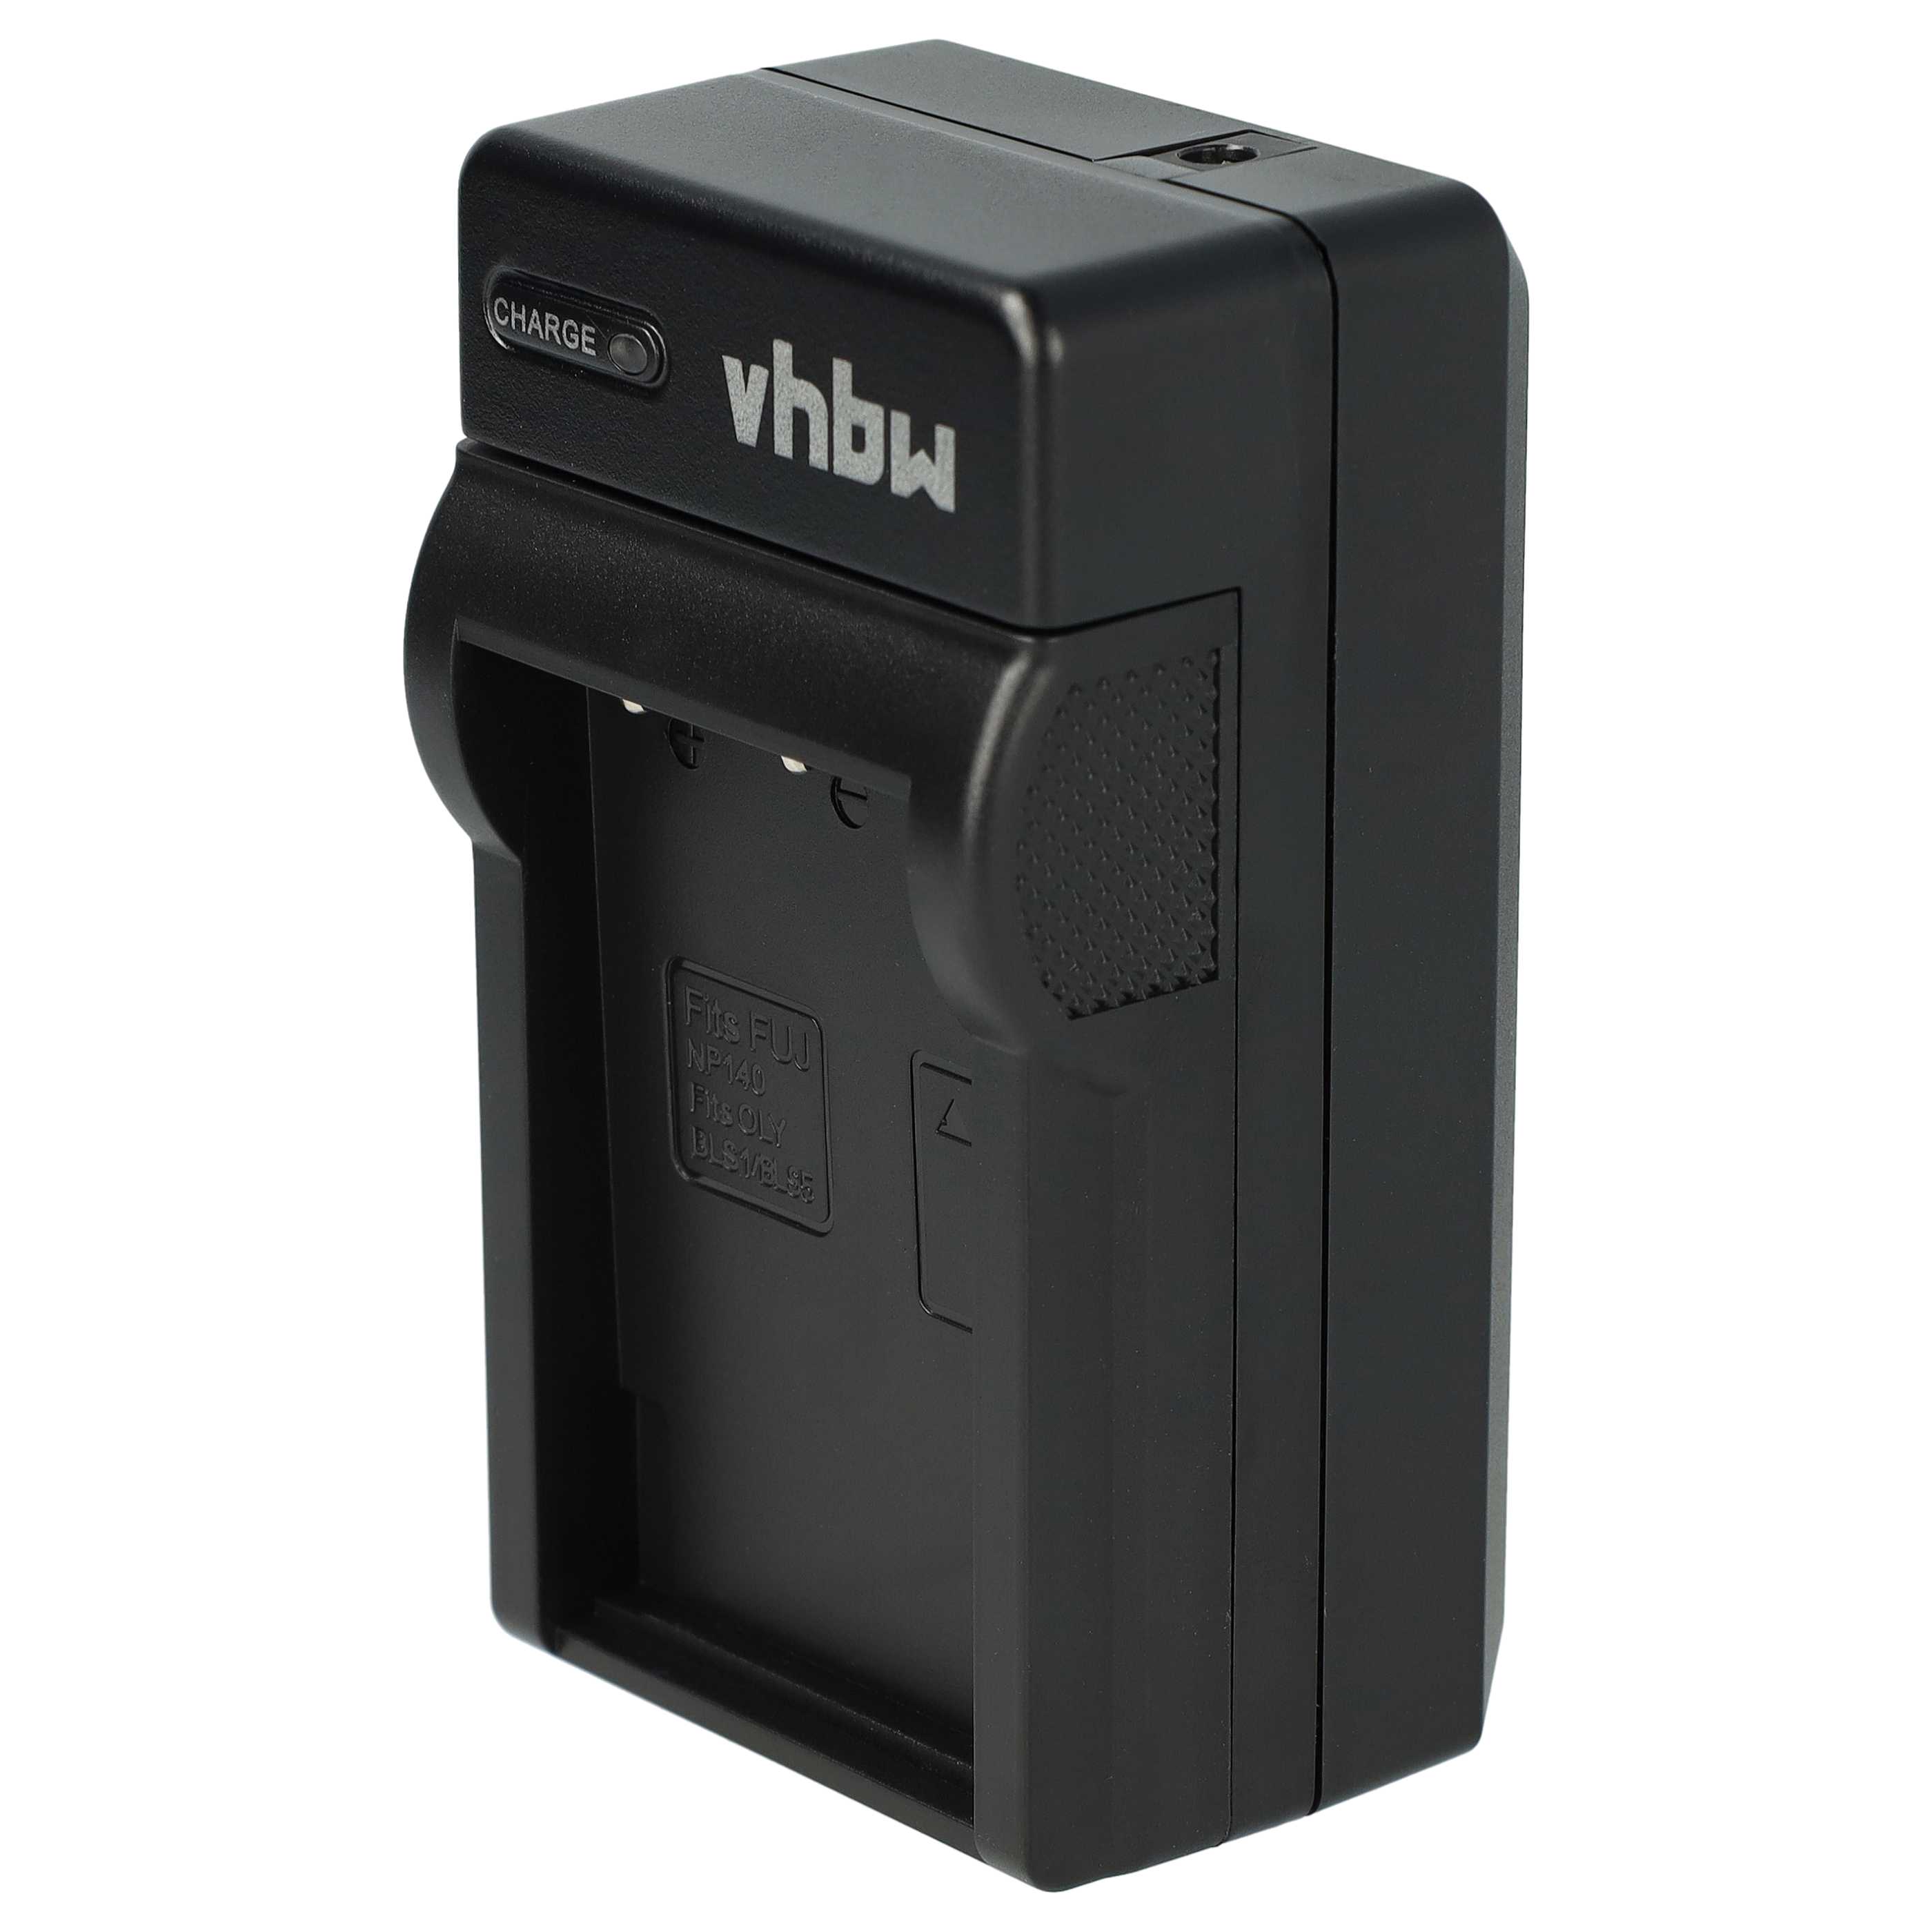 Caricabatterie + adattatore da auto per fotocamera Fuji - 0,6A 8,4V 88,5cm